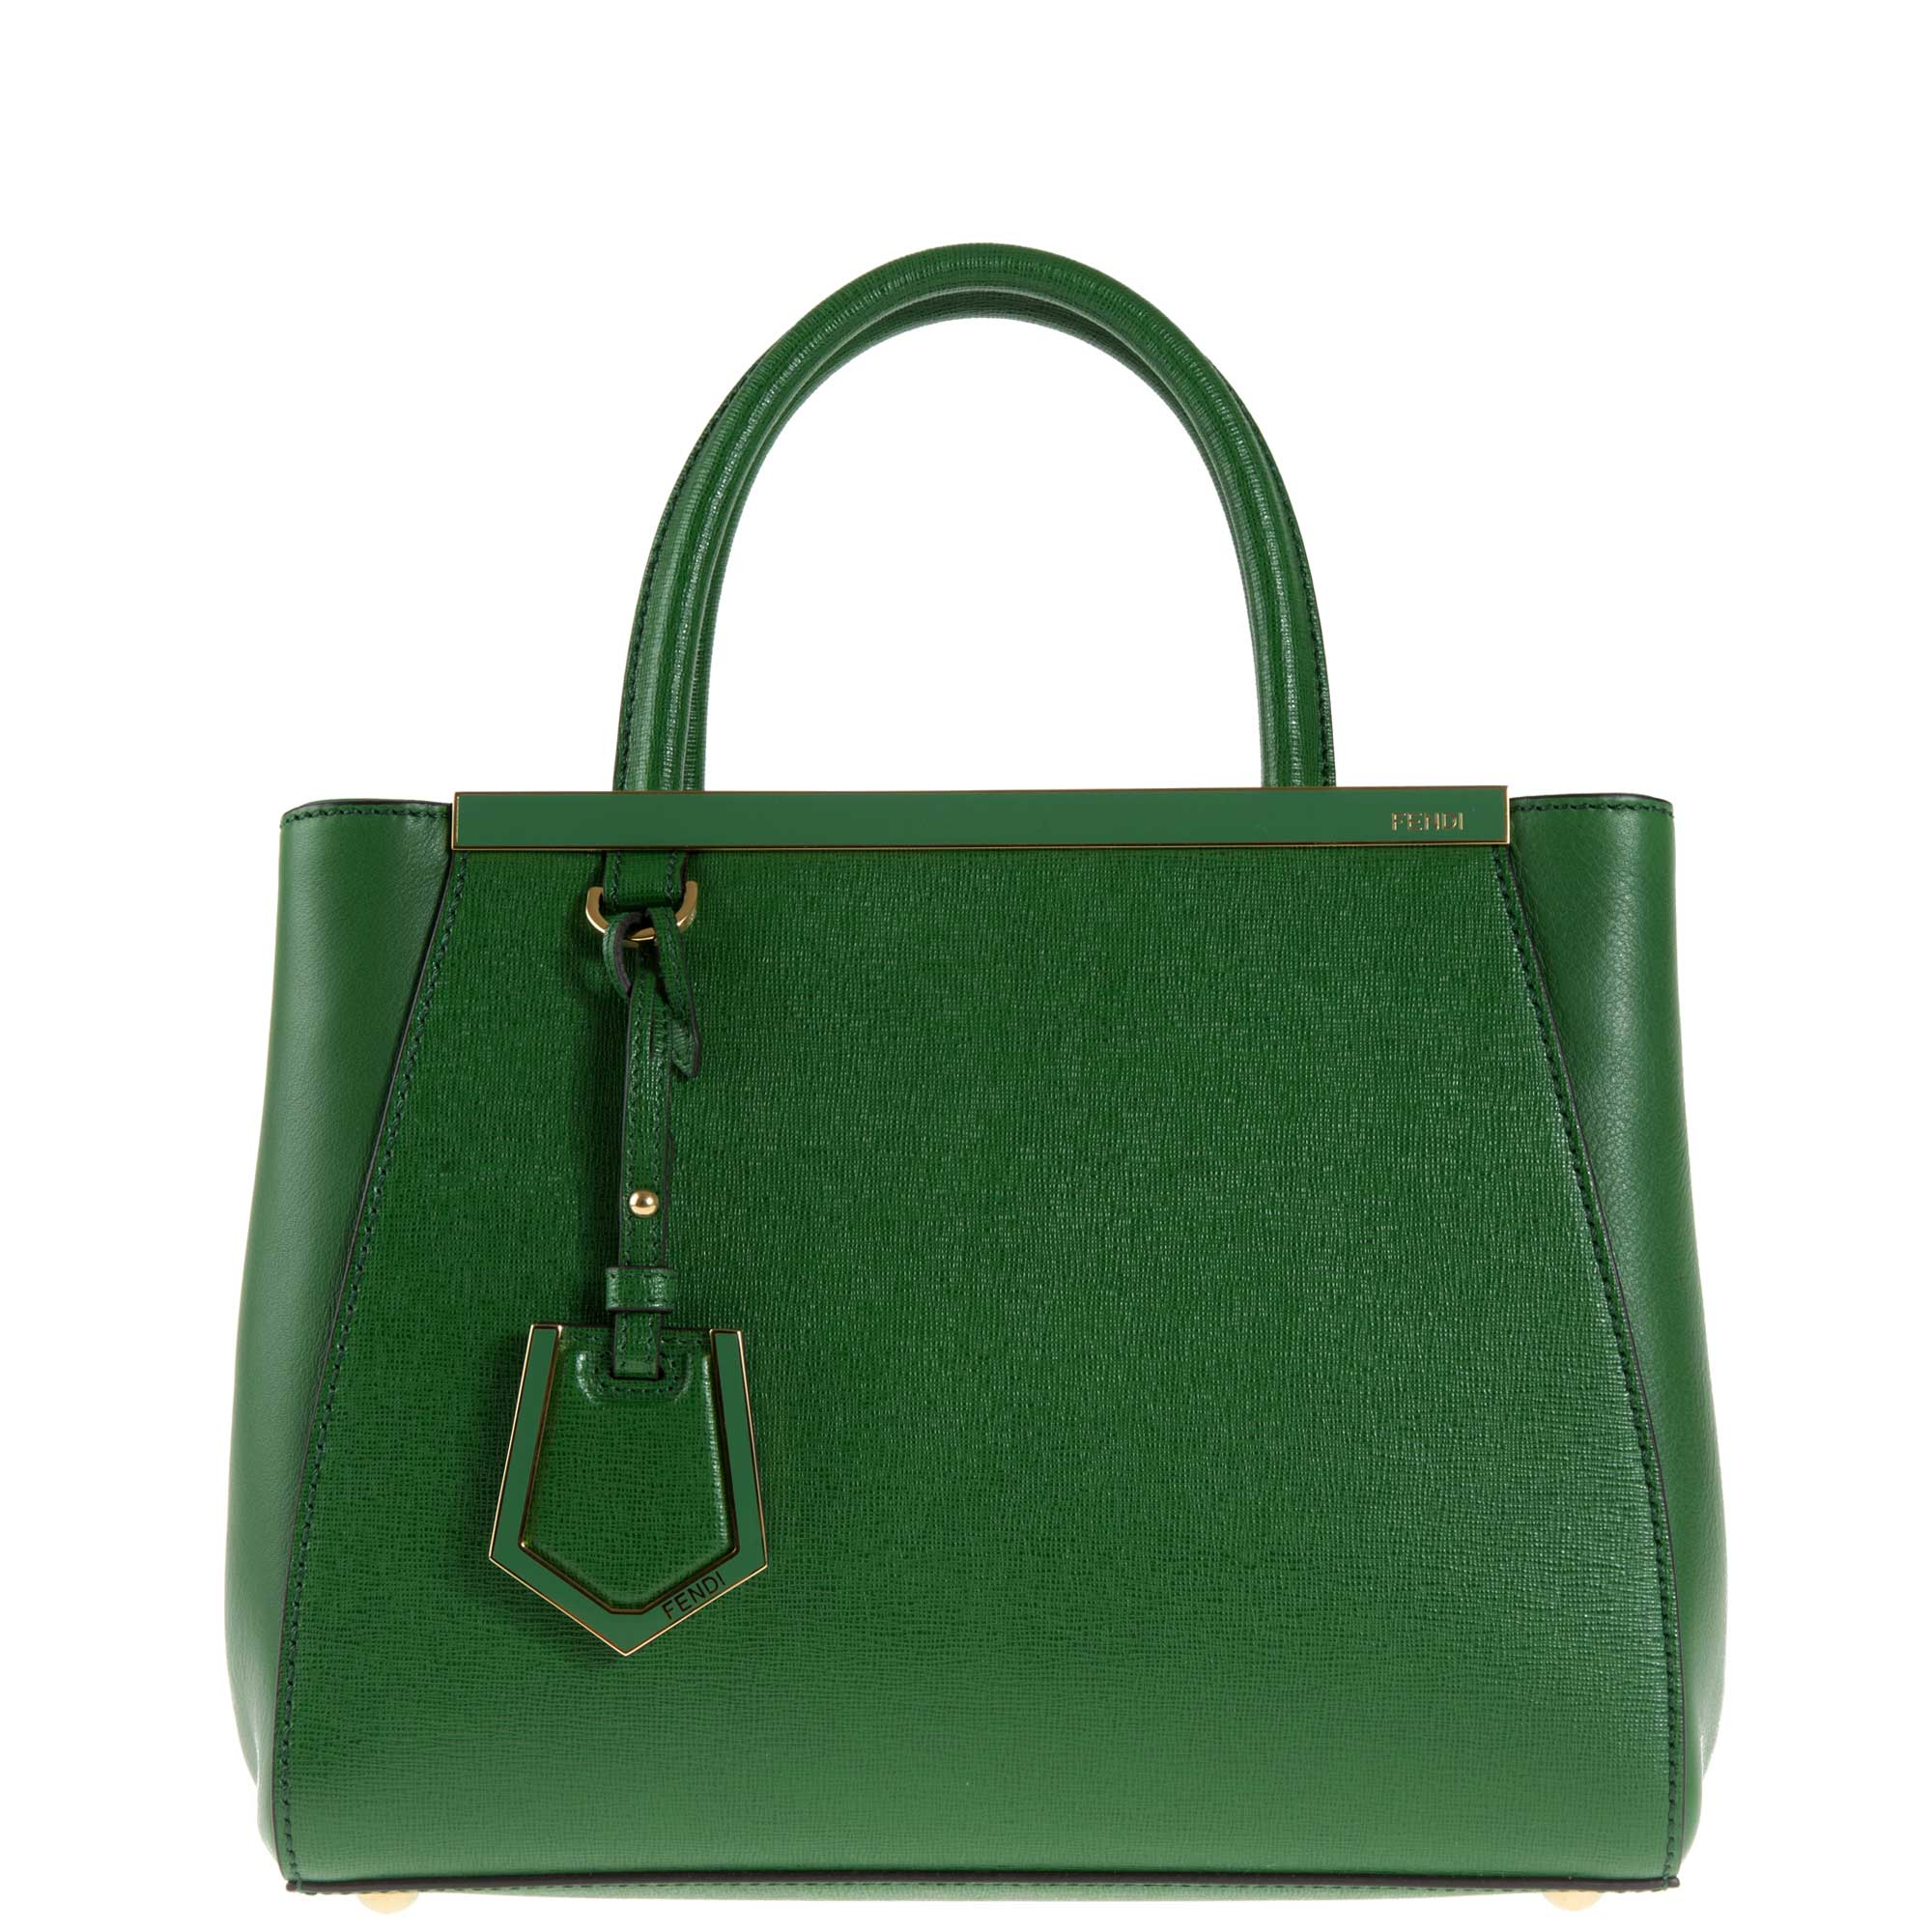 Emerald Green Handbags For Women | semashow.com